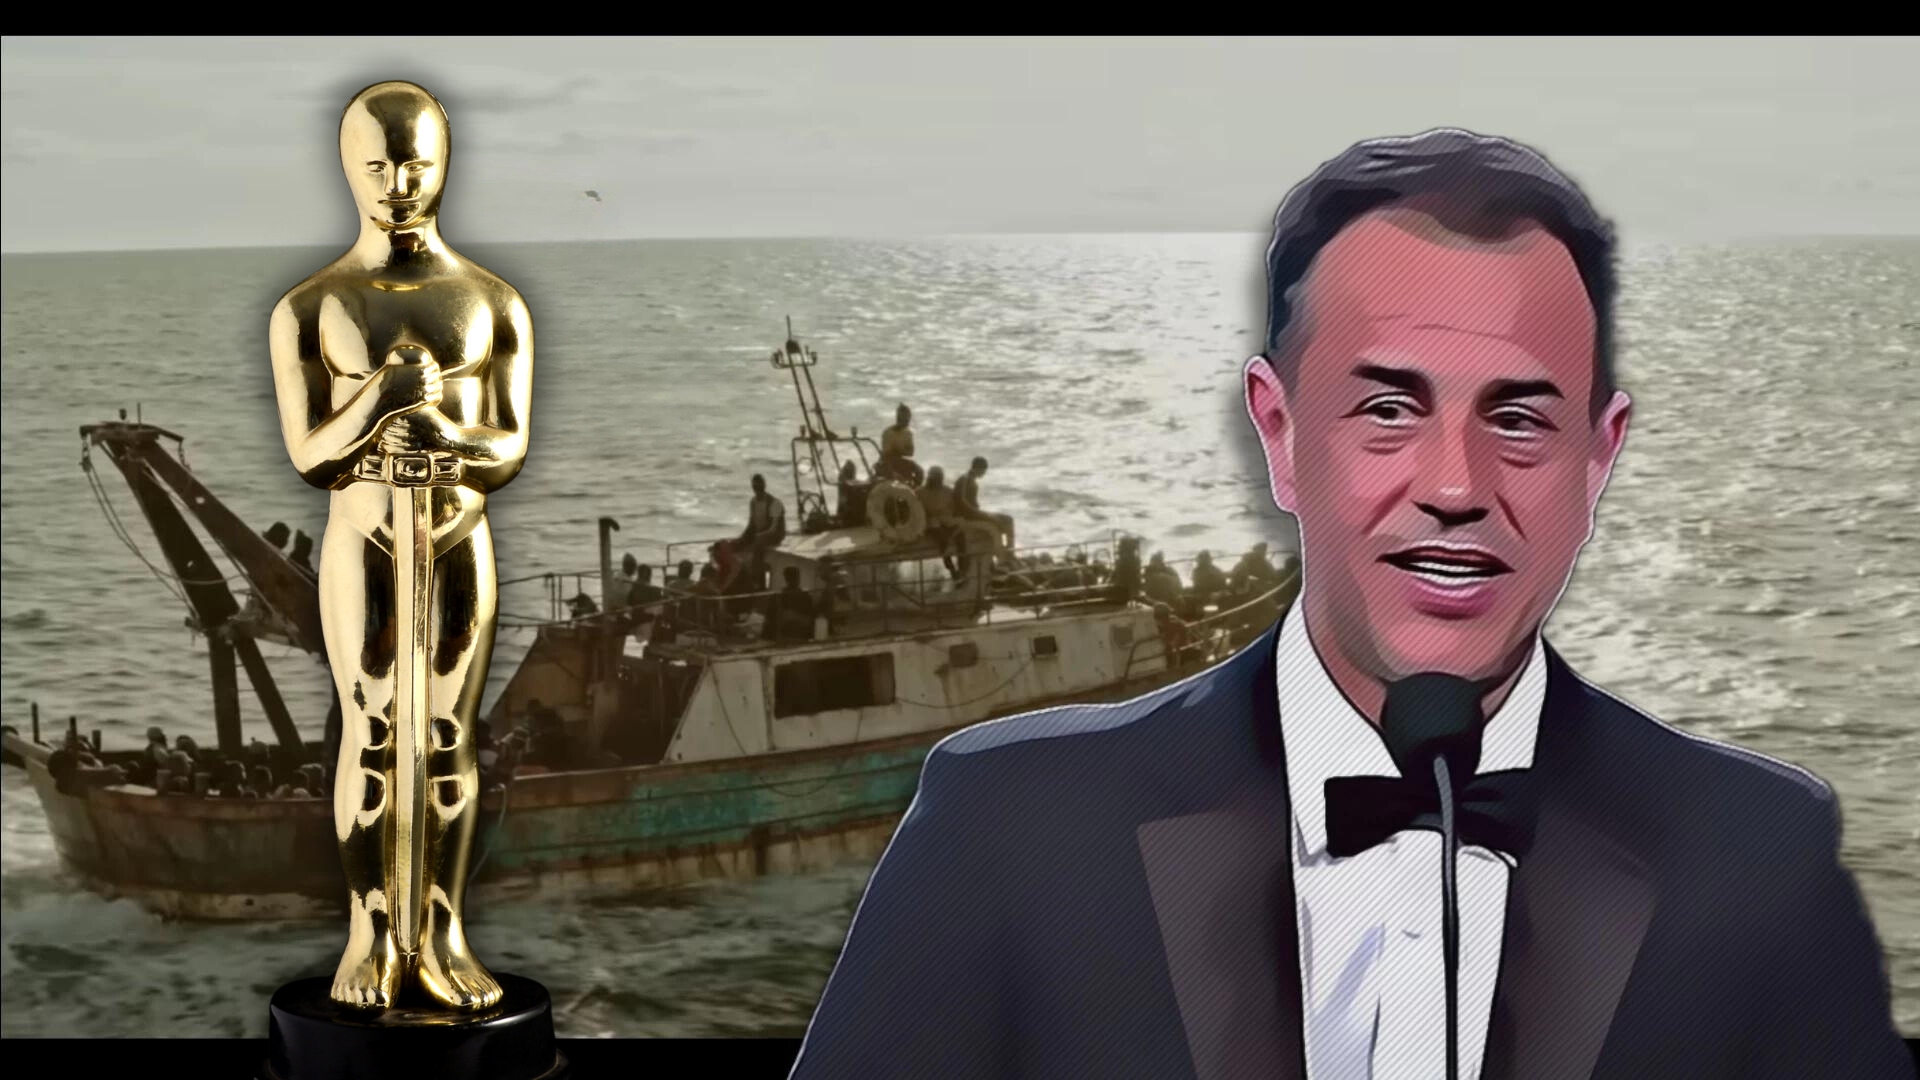 Caro Porro, agli Oscar una provocazione per Salvini e Meloni?